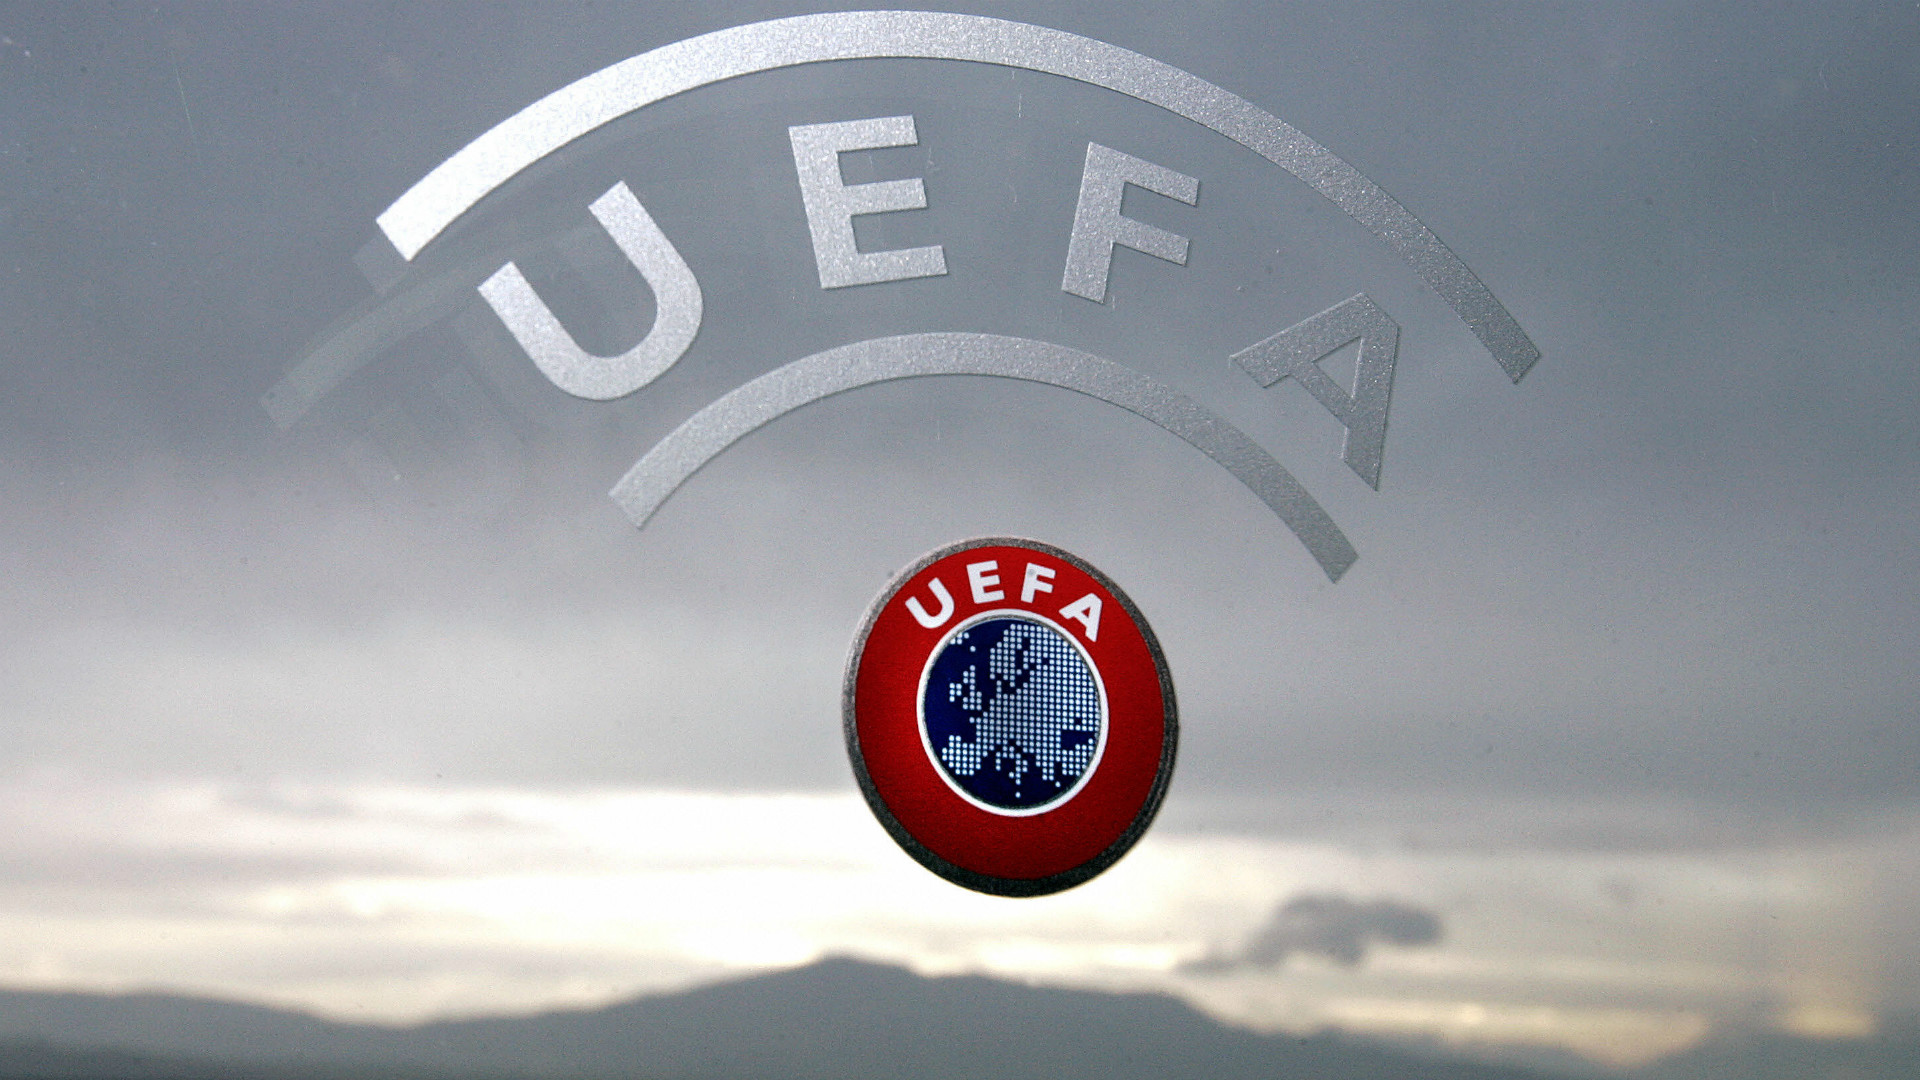 УЕФА принес извинения всем зрителям, пострадавшим перед финальным матчем Лиги чемпионов